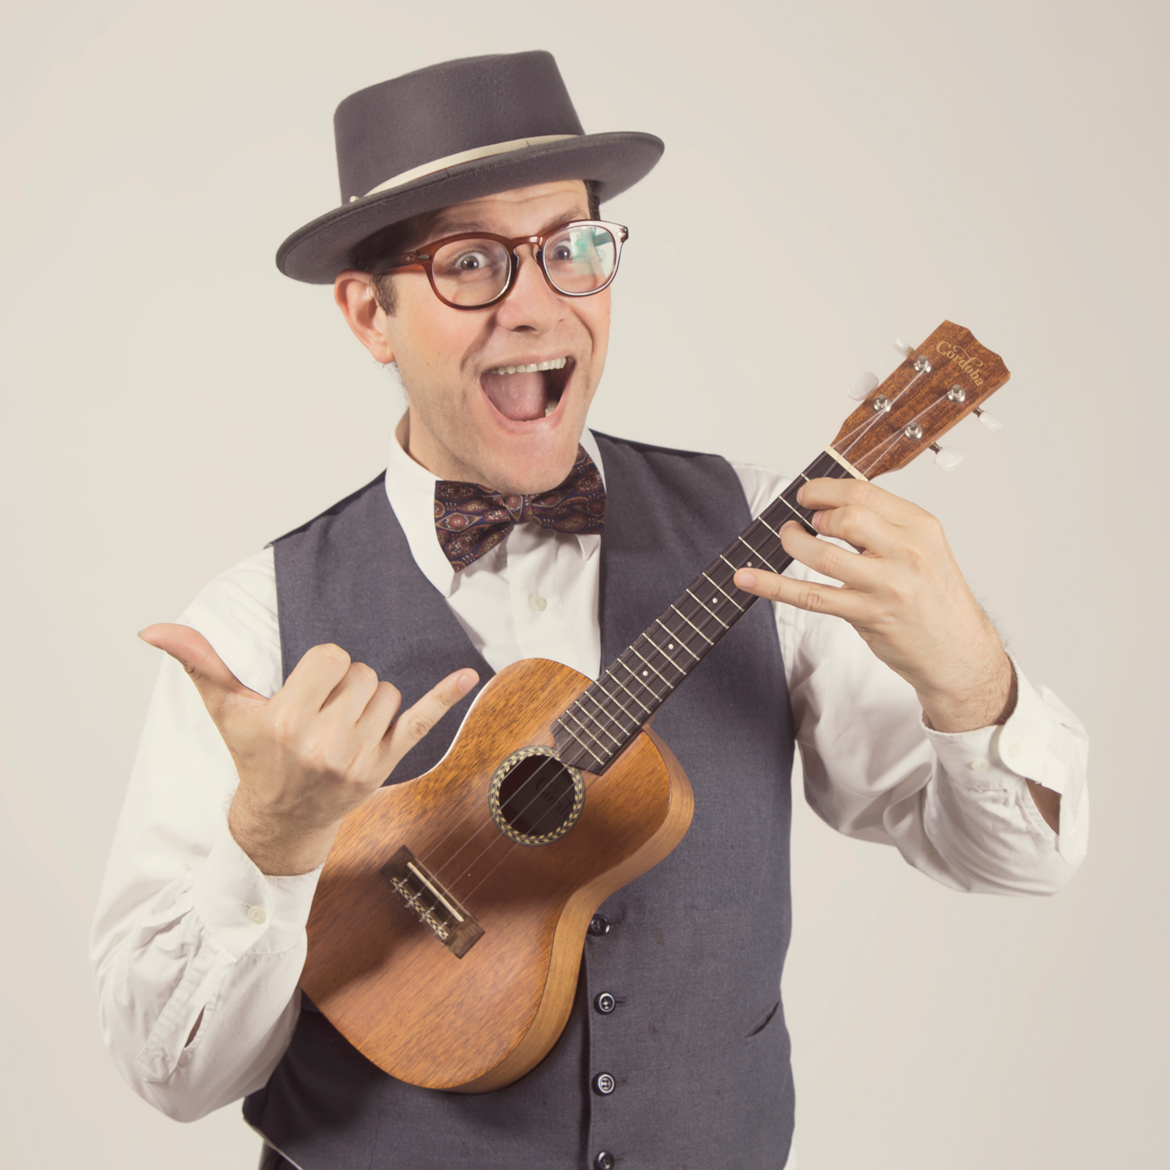 Guy holding ukulele instrument